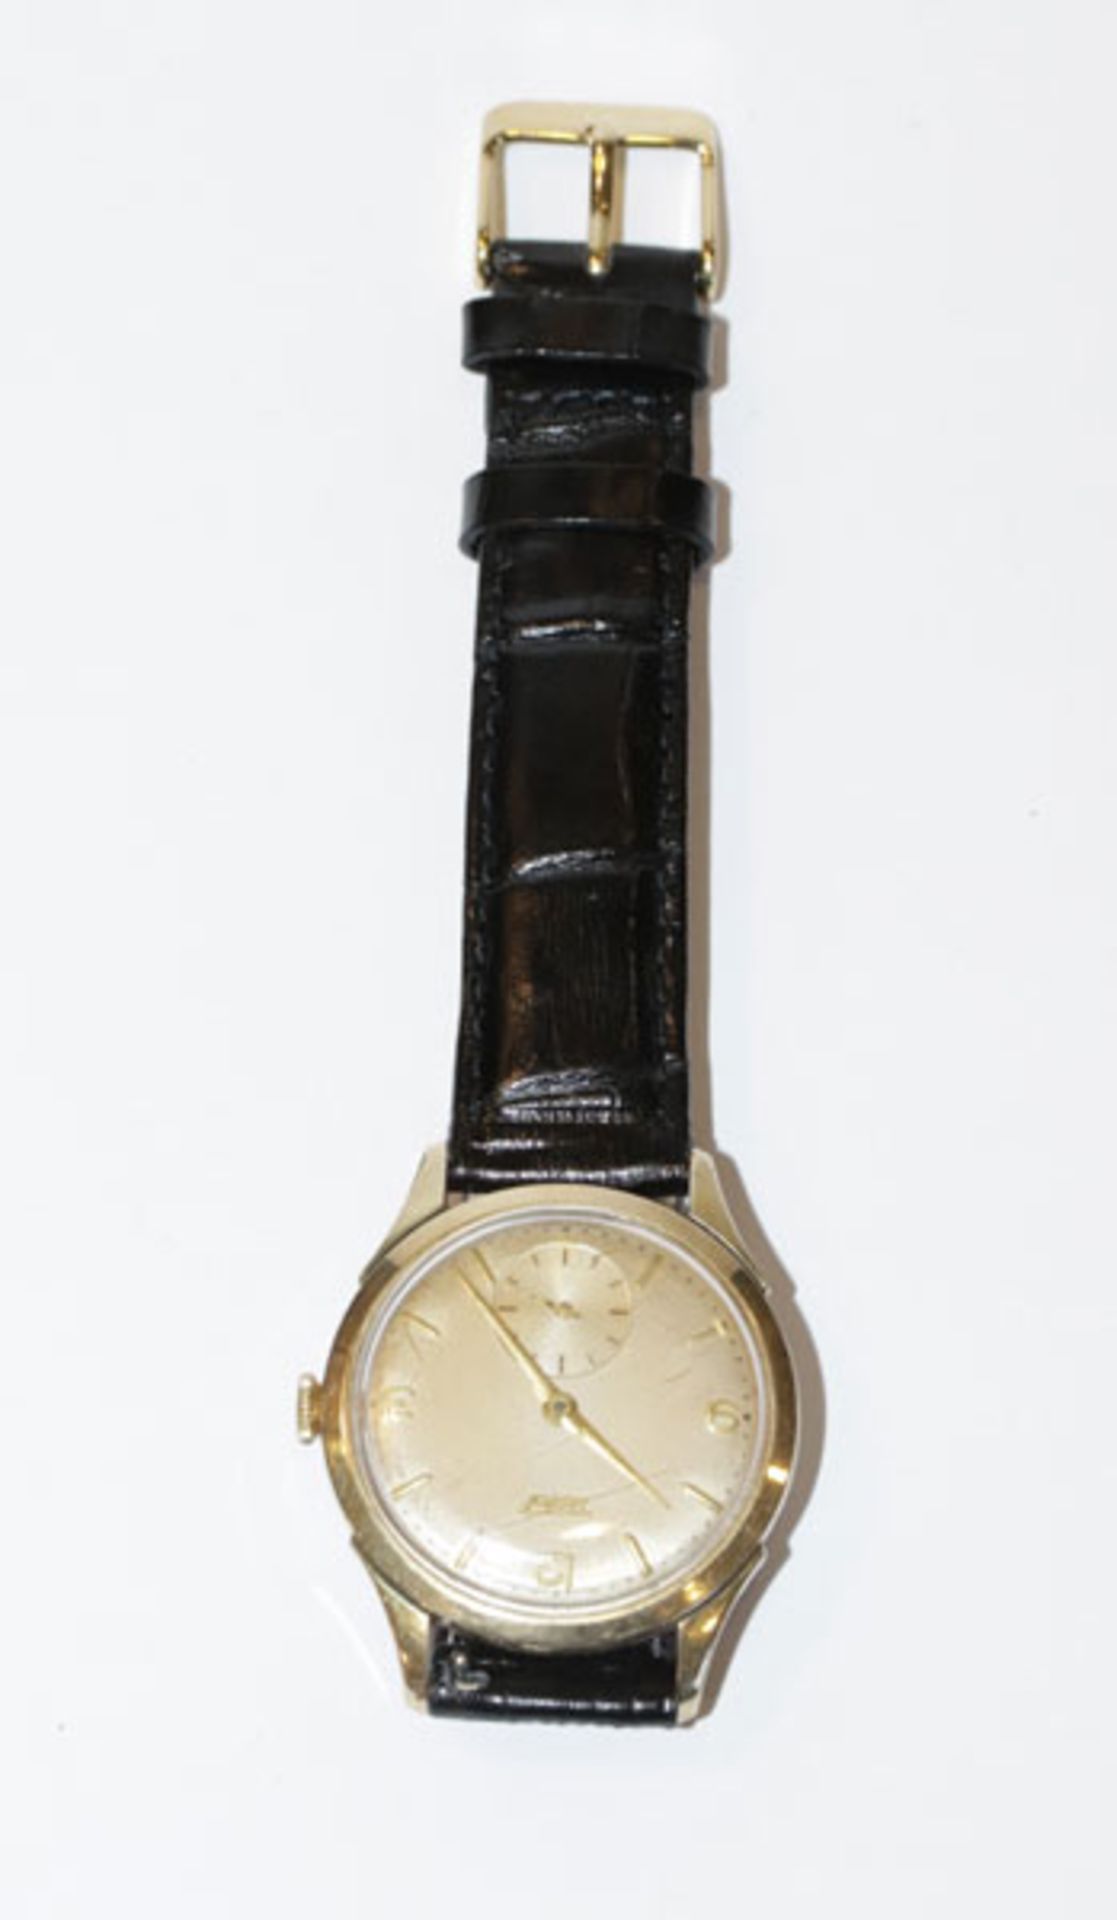 Tissot Herren-Armbanduhr, mechanisch, um 1960/70, intakt, an neuwertigen, schwarzen Lederarmband